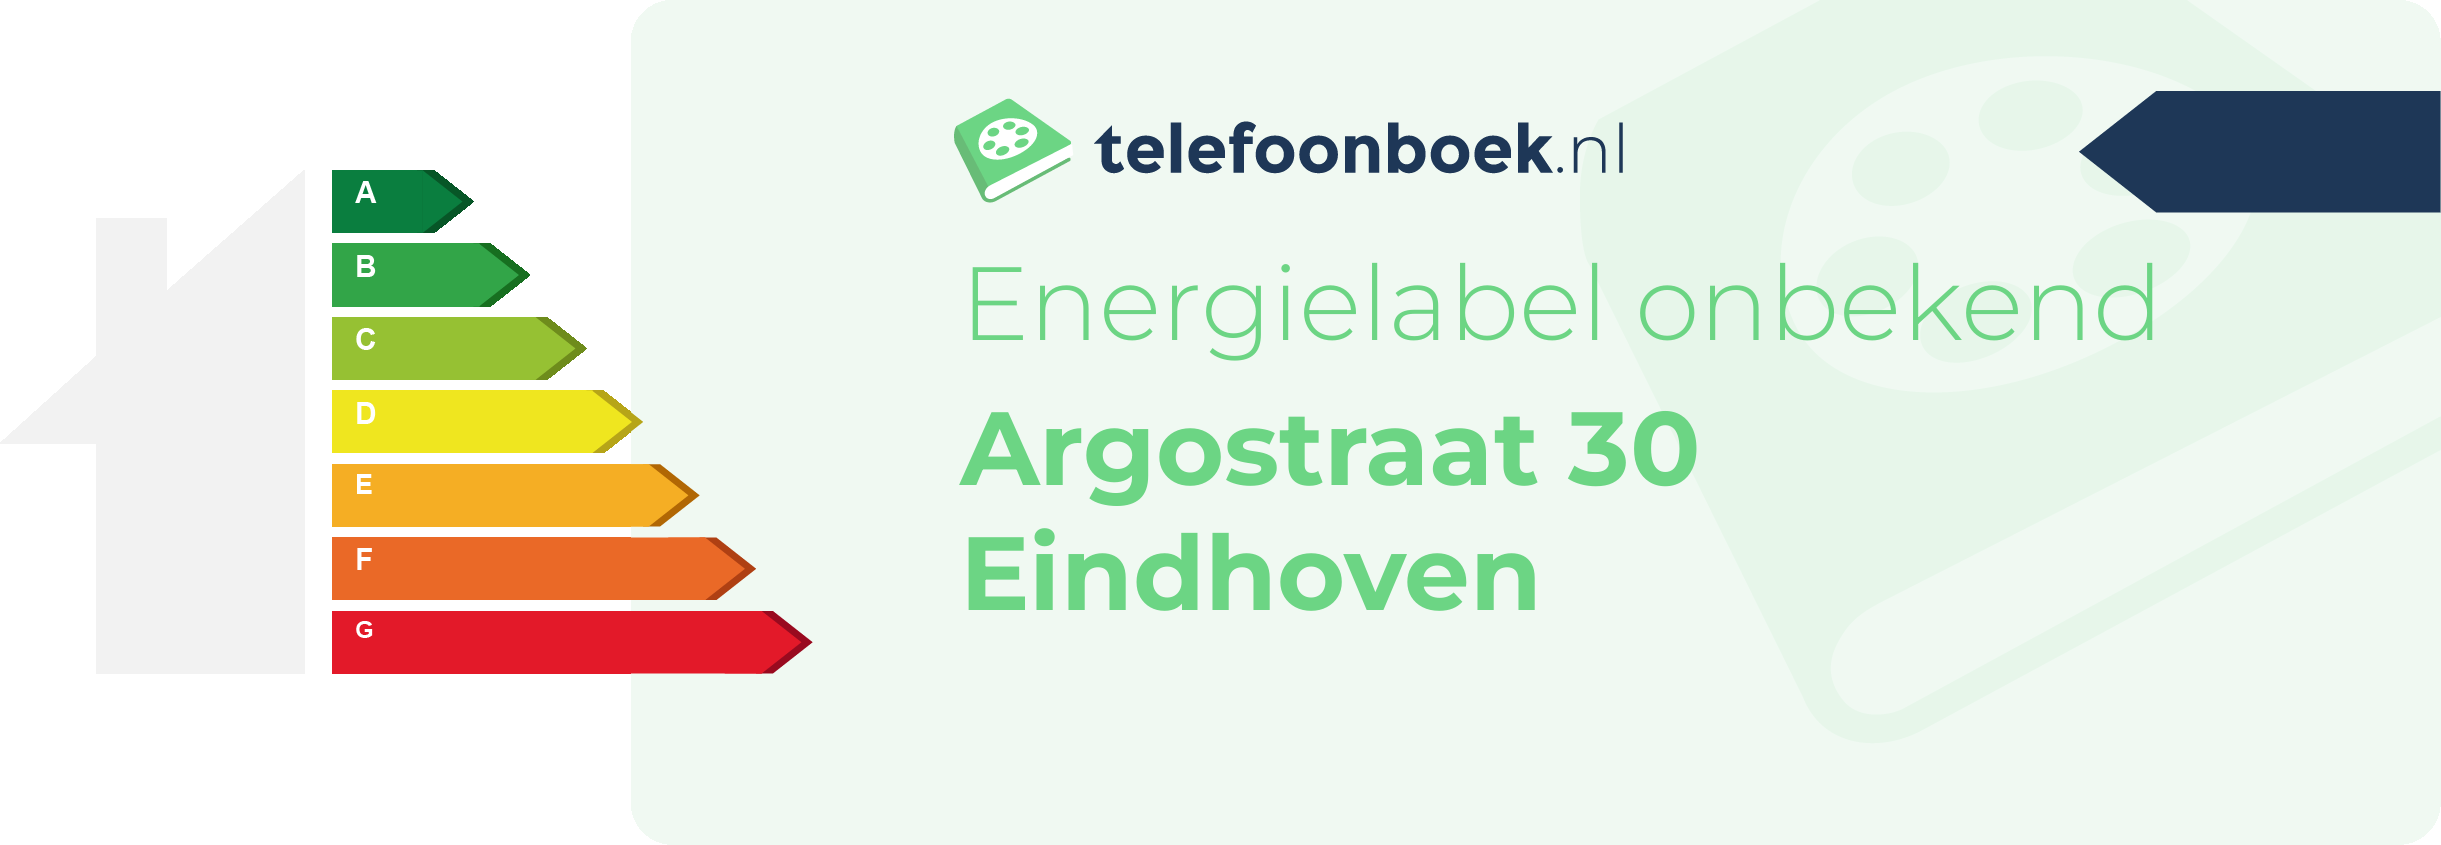 Energielabel Argostraat 30 Eindhoven